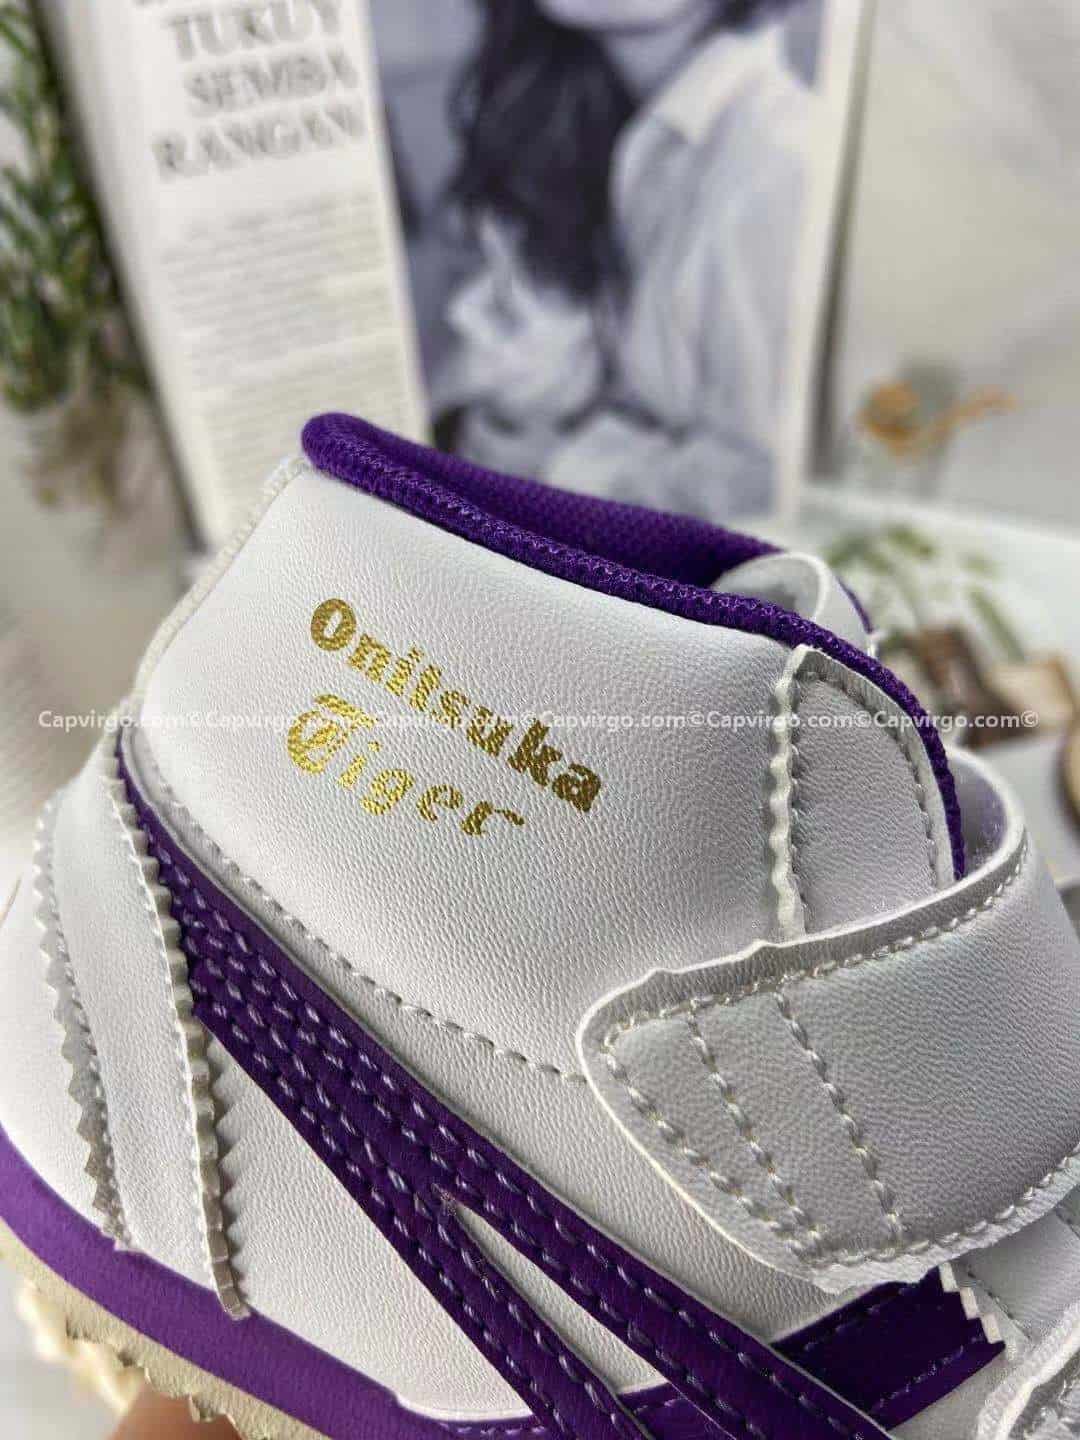 Giày trẻ em Onitsuka Tiger cao cổ trắng sọc tím